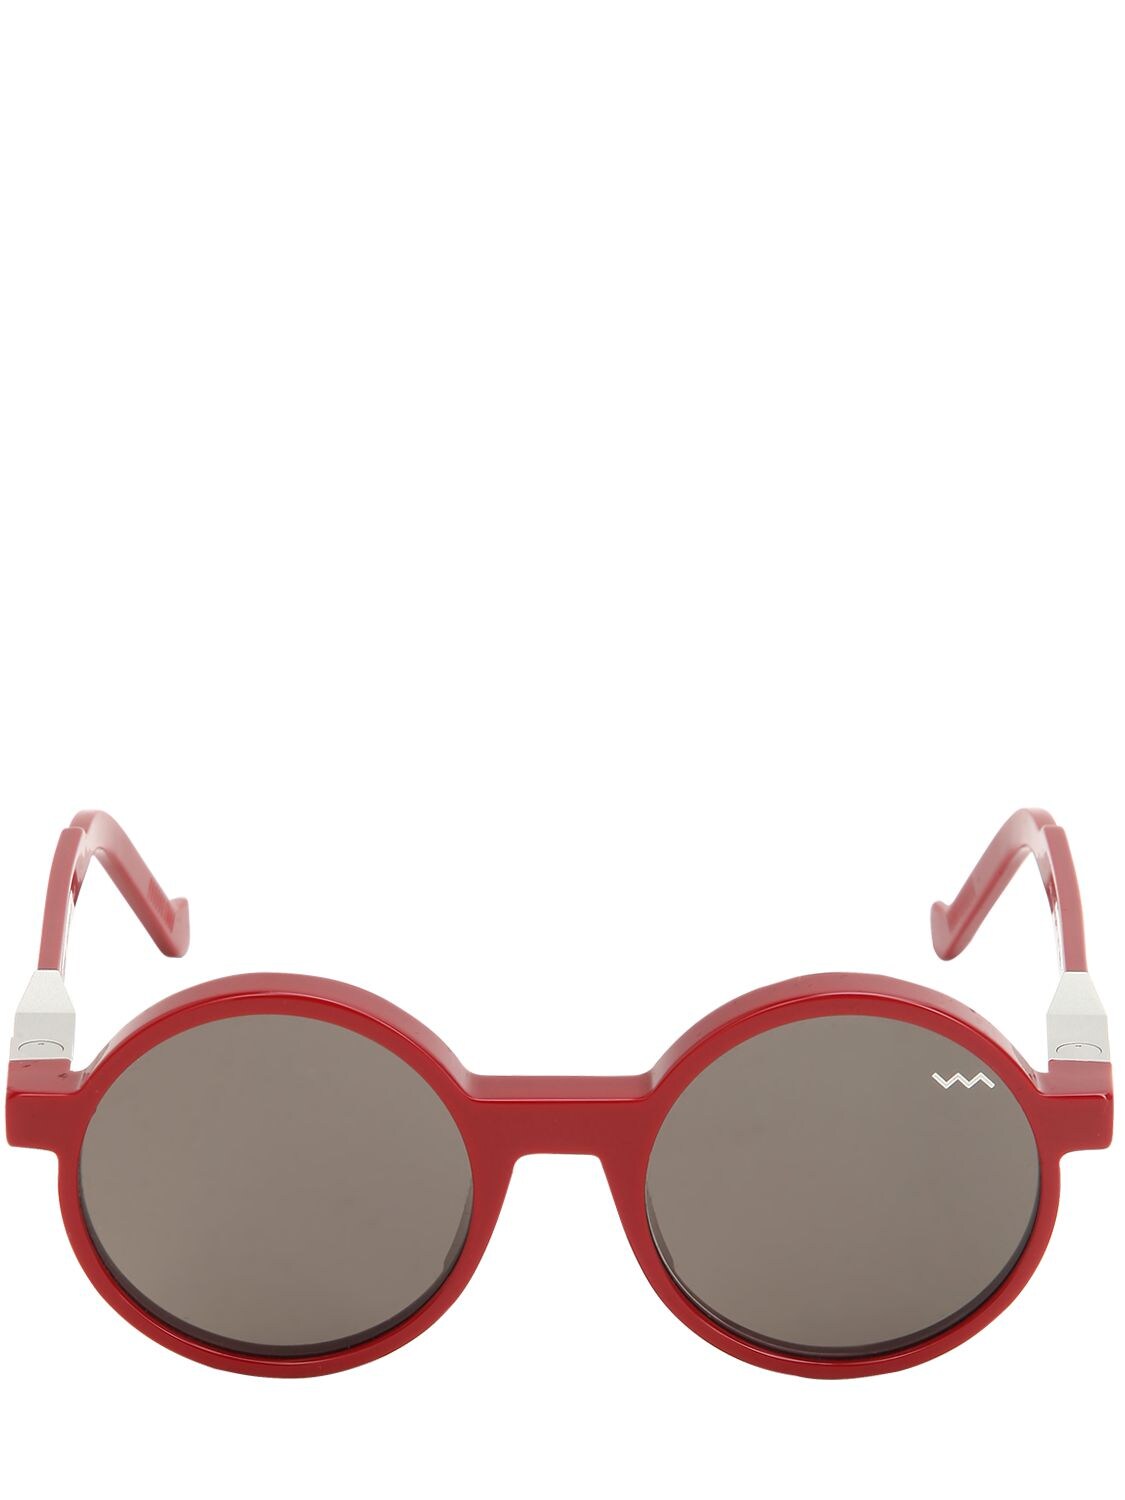 Vava Iconic Round Acetate Sunglasses In Red